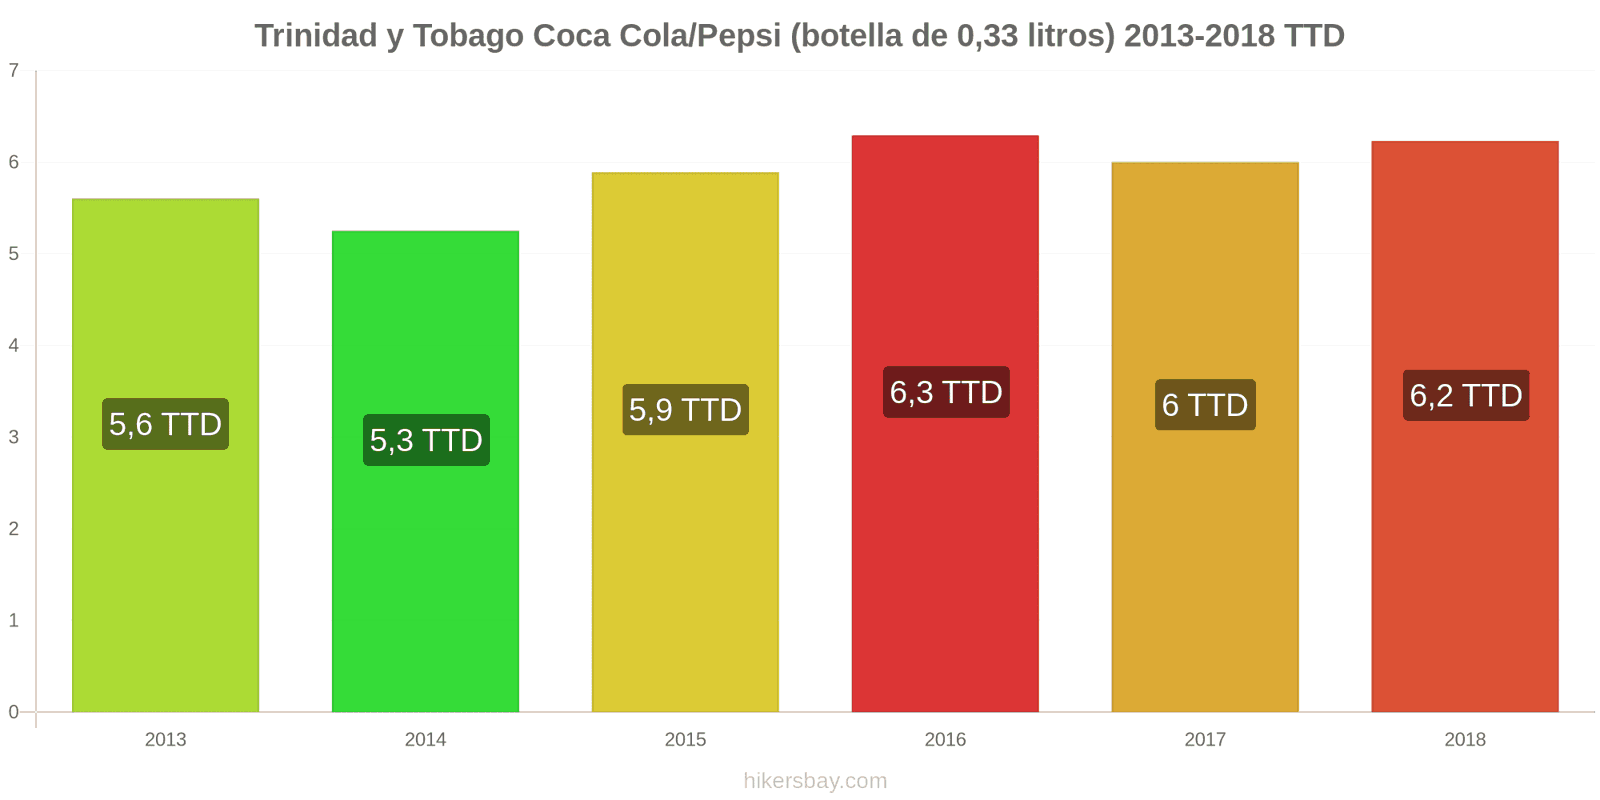 Trinidad y Tobago cambios de precios Coca-Cola/Pepsi (botella de 0.33 litros) hikersbay.com